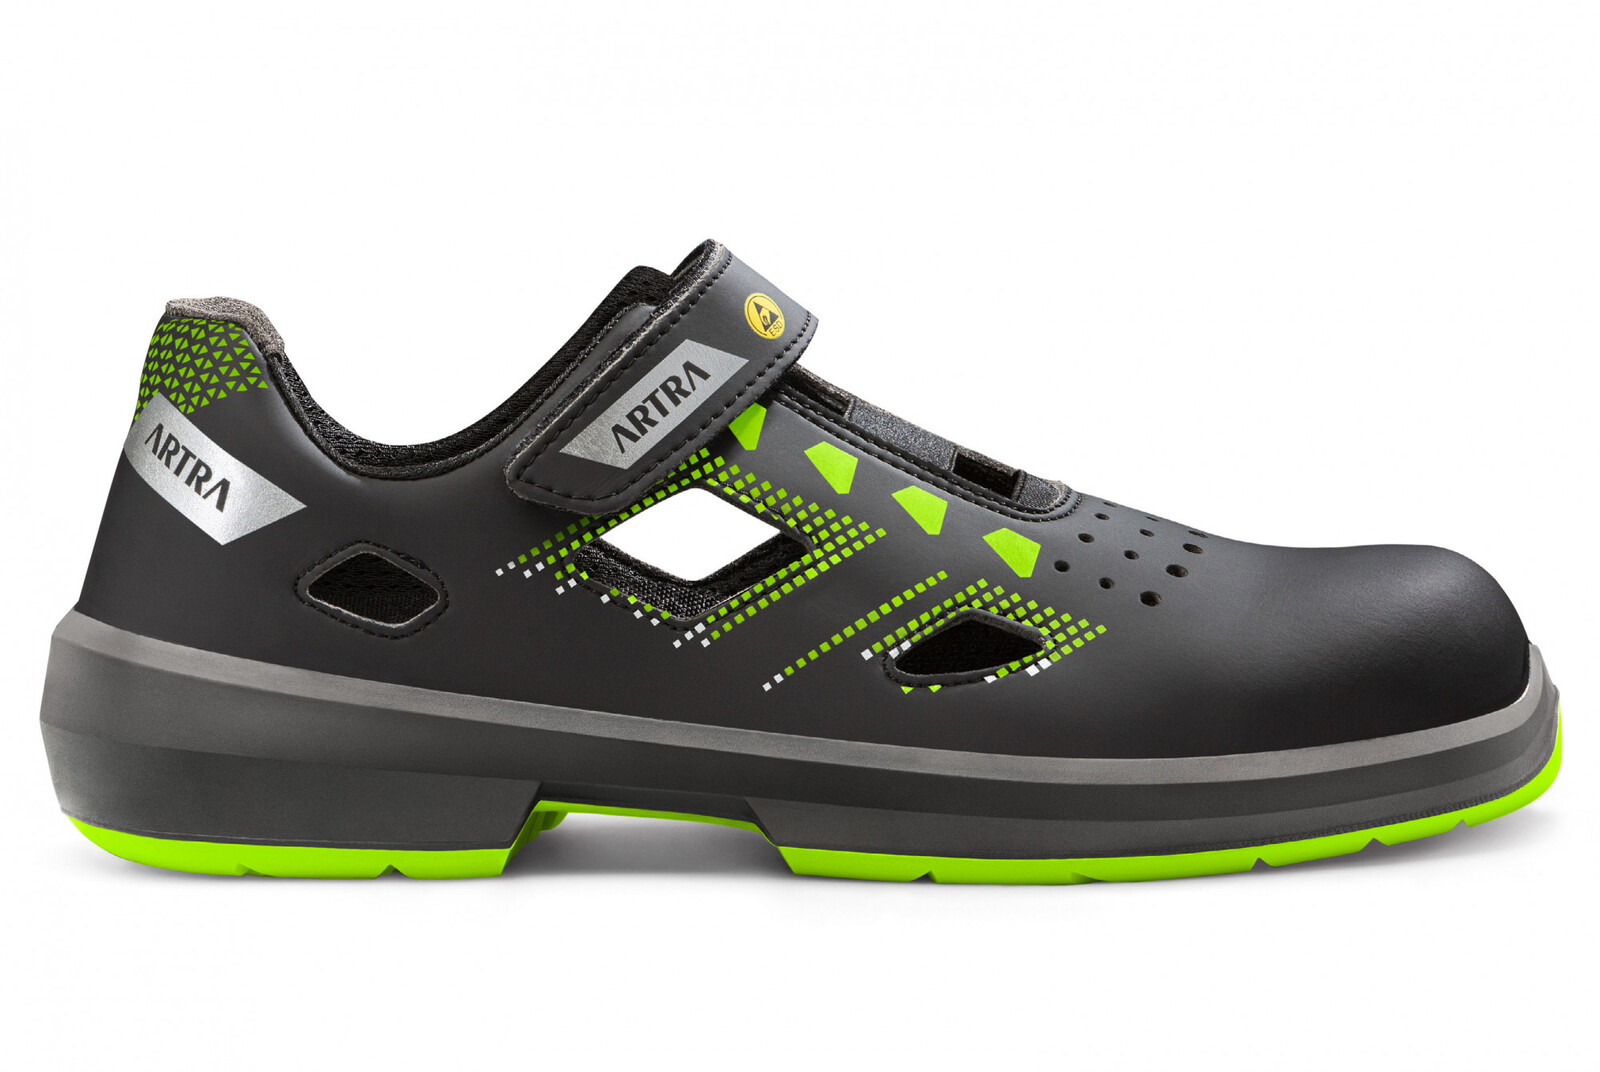 Bezpečnostné sandále Artra Arzo 805 678080 S1P SRC ESD MF - veľkosť: 44, farba: čierna/zelená